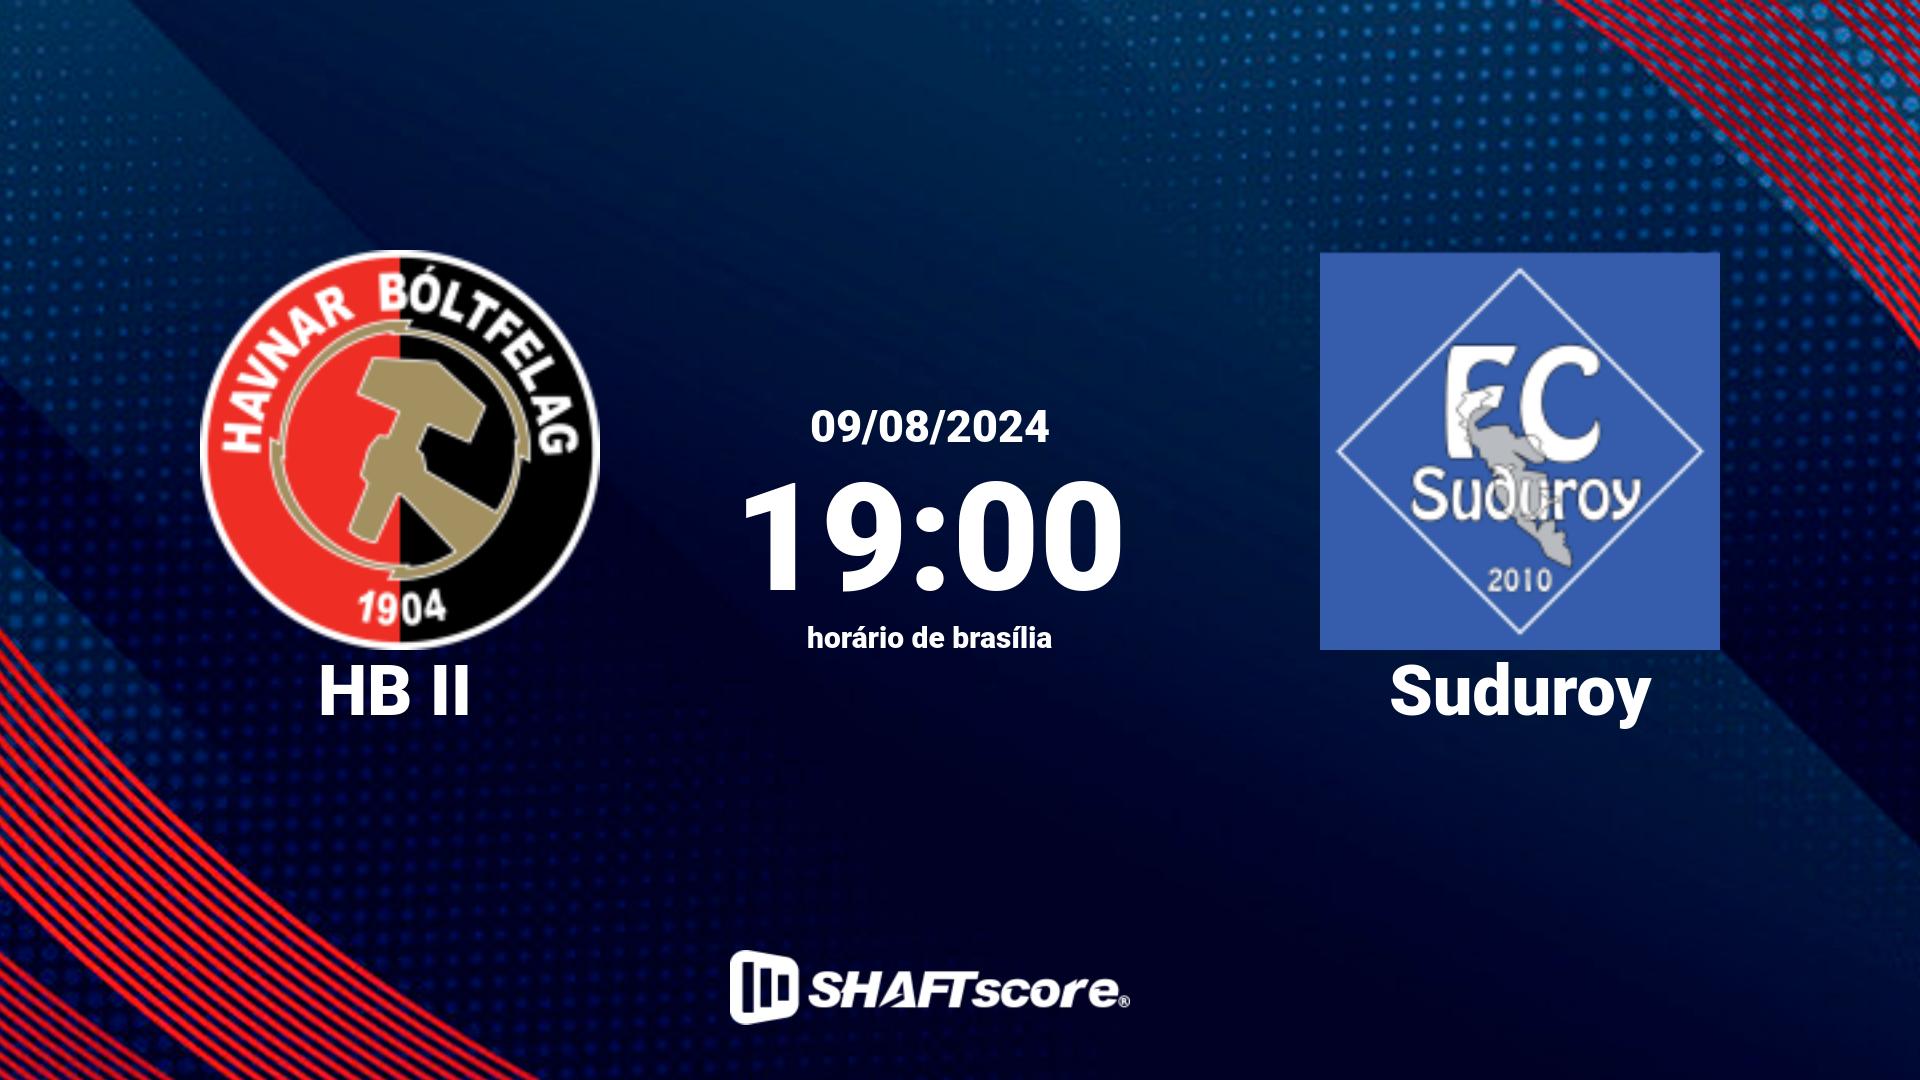 Estatísticas do jogo HB II vs Suduroy 09.08 19:00